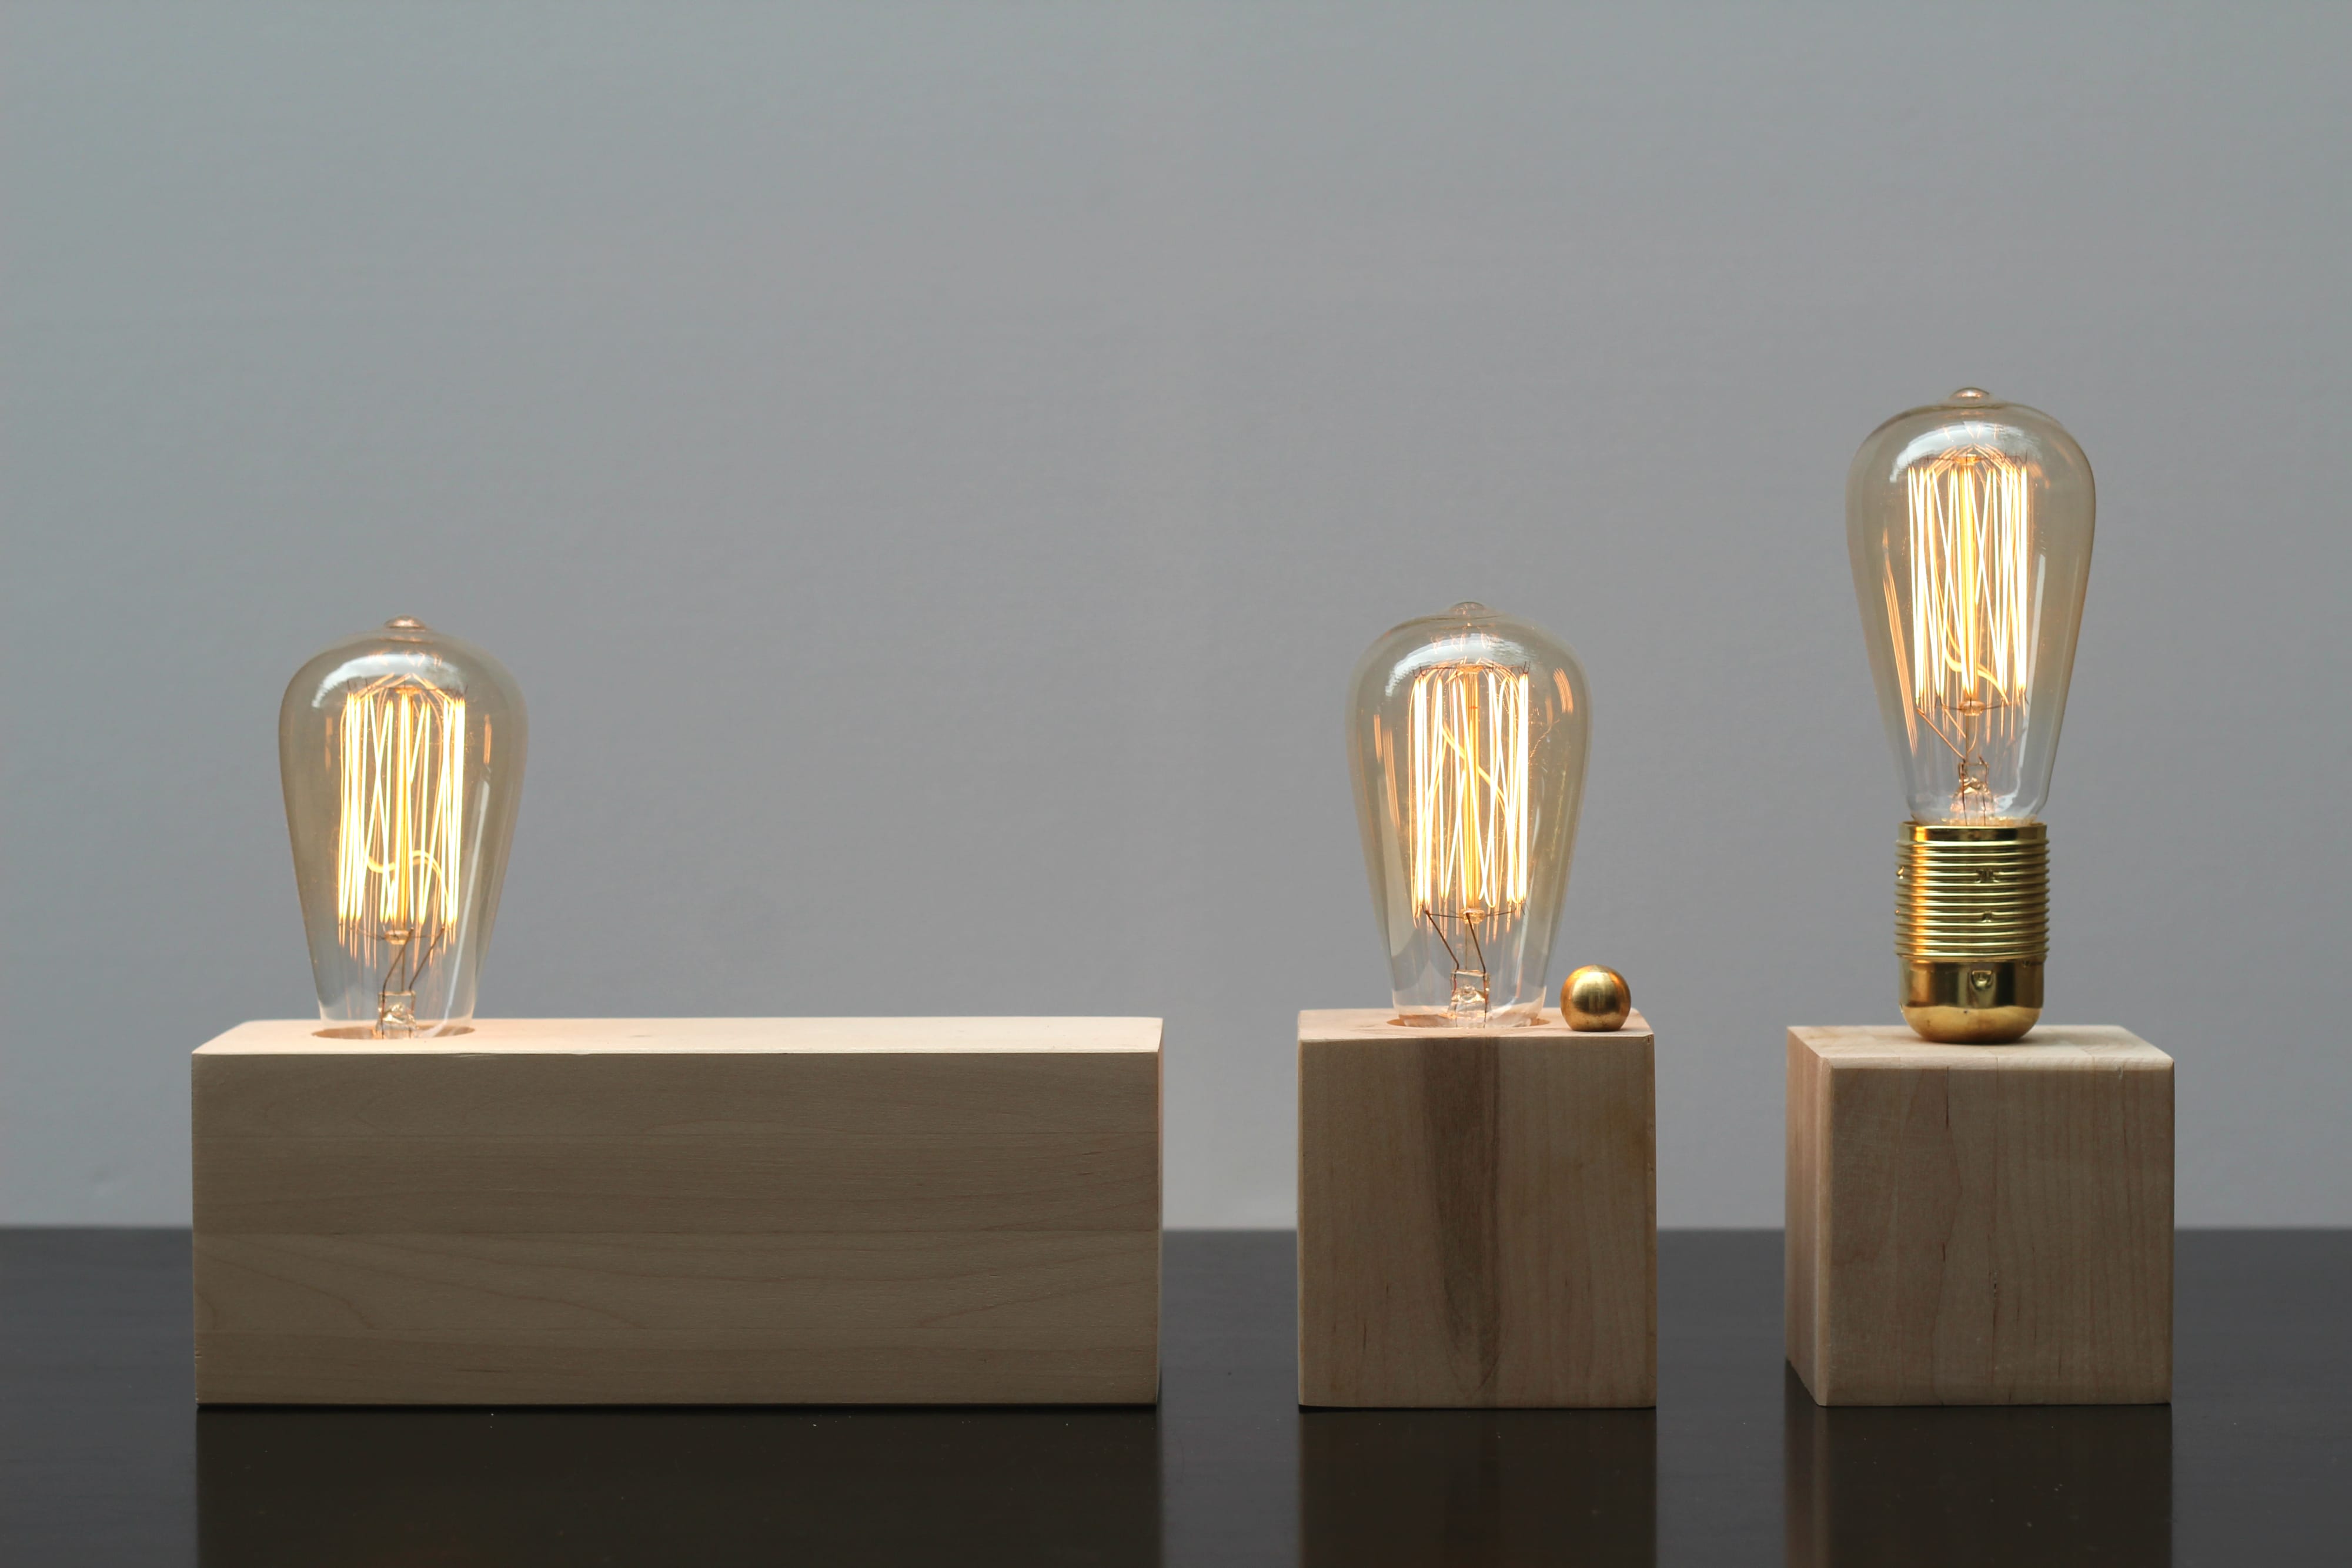 גוף תאורה שולחני מעוצב קובית עץ מלא פחם | מנורת שידה | מנורה למשרד | אריאל נתנסון אמן גופי תאורה מעוצבים